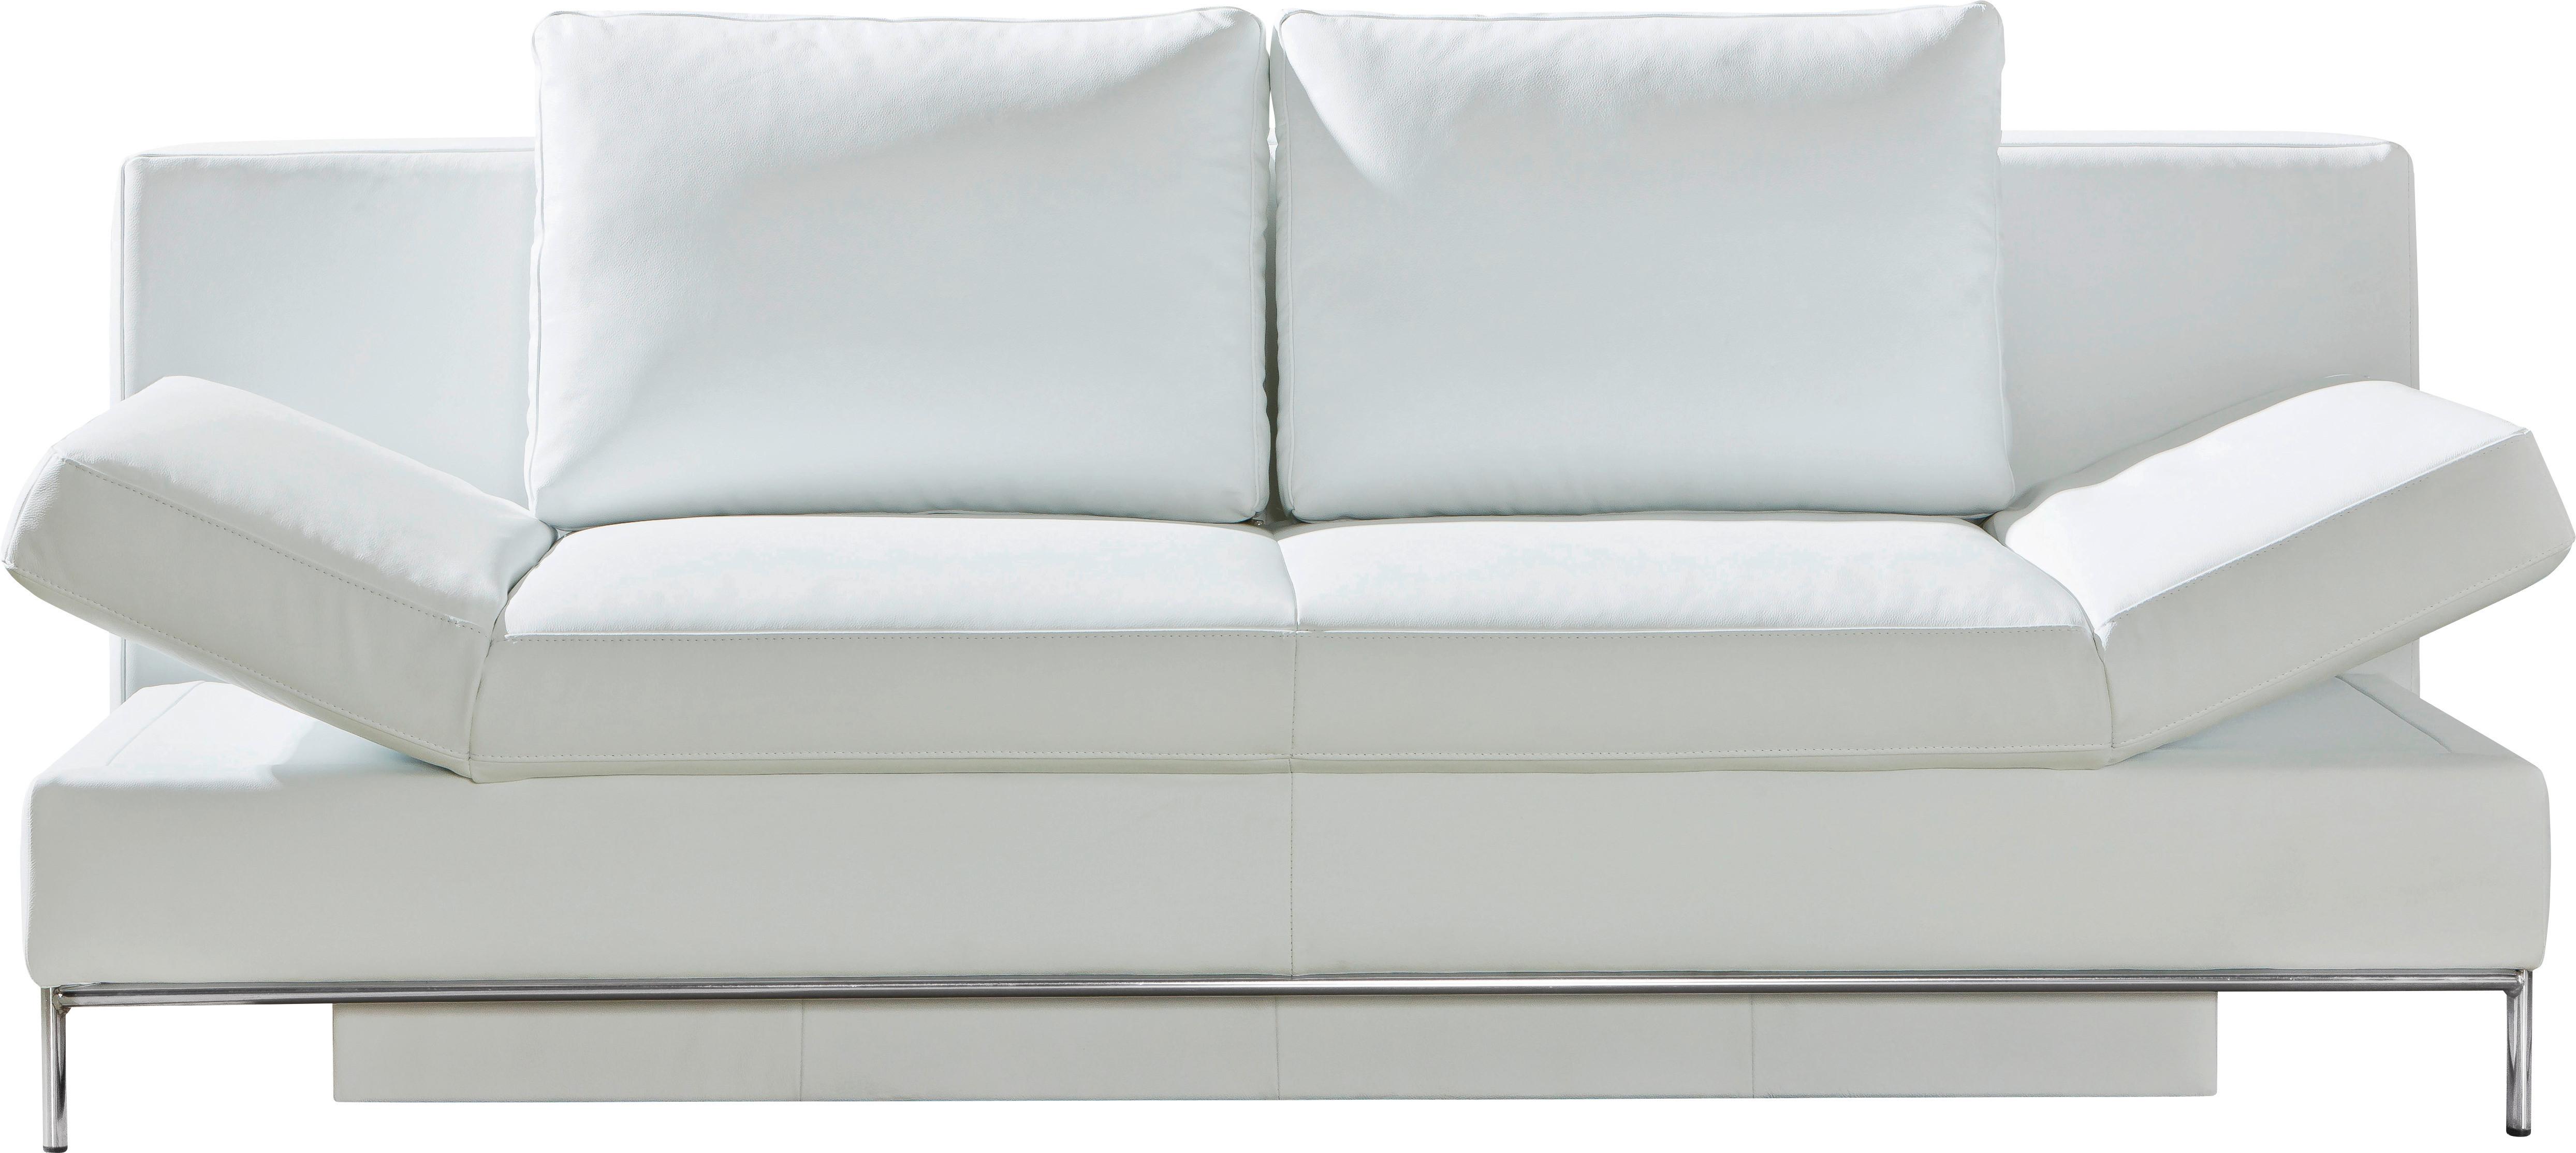 3-Sitzer-Sofa Mit Schlaffunktion und Bettkasten Occa Weiß Leder - Chromfarben/Weiß, Design, Leder (203/83/54cm) - Livetastic